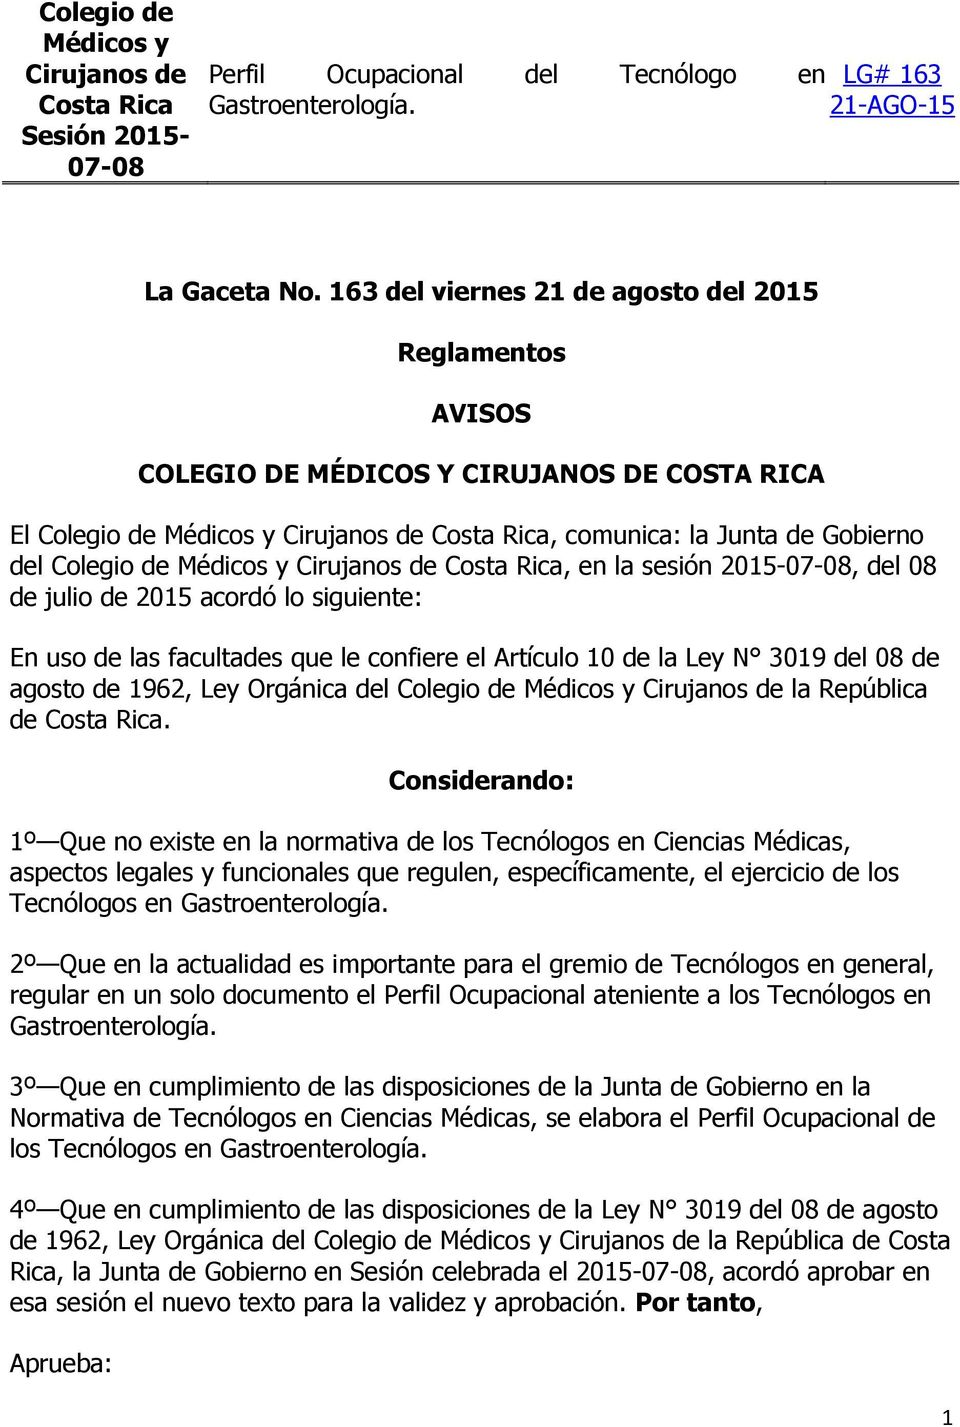 Médicos y Cirujanos de Costa Rica, en la sesión 2015-07-08, del 08 de julio de 2015 acordó lo siguiente: En uso de las facultades que le confiere el Artículo 10 de la Ley N 3019 del 08 de agosto de